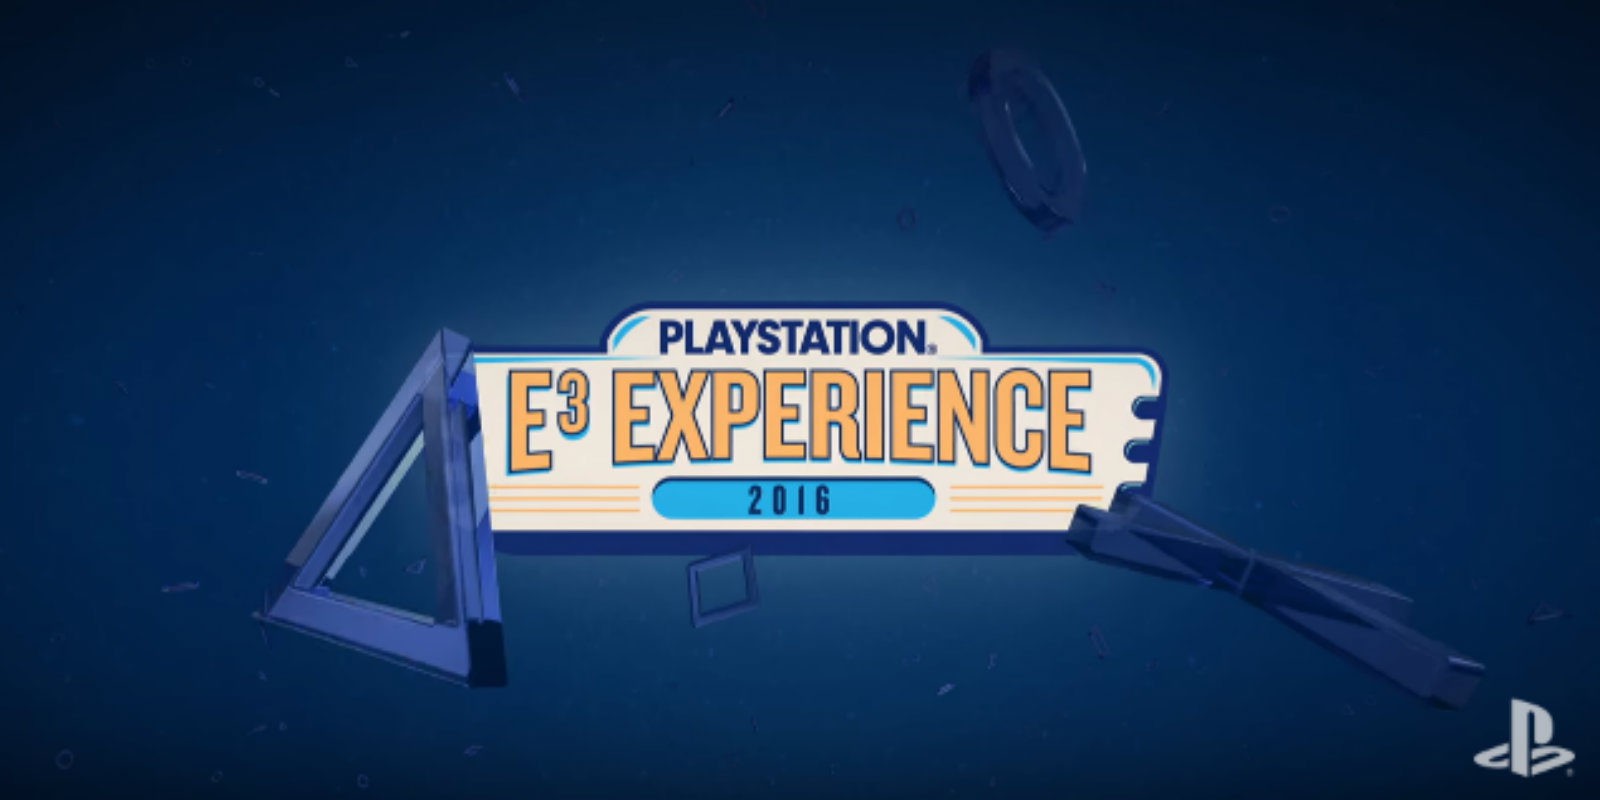 E3 2016: La conferencia de PlayStation en los mejores cines de EEUU y Latinoamérica